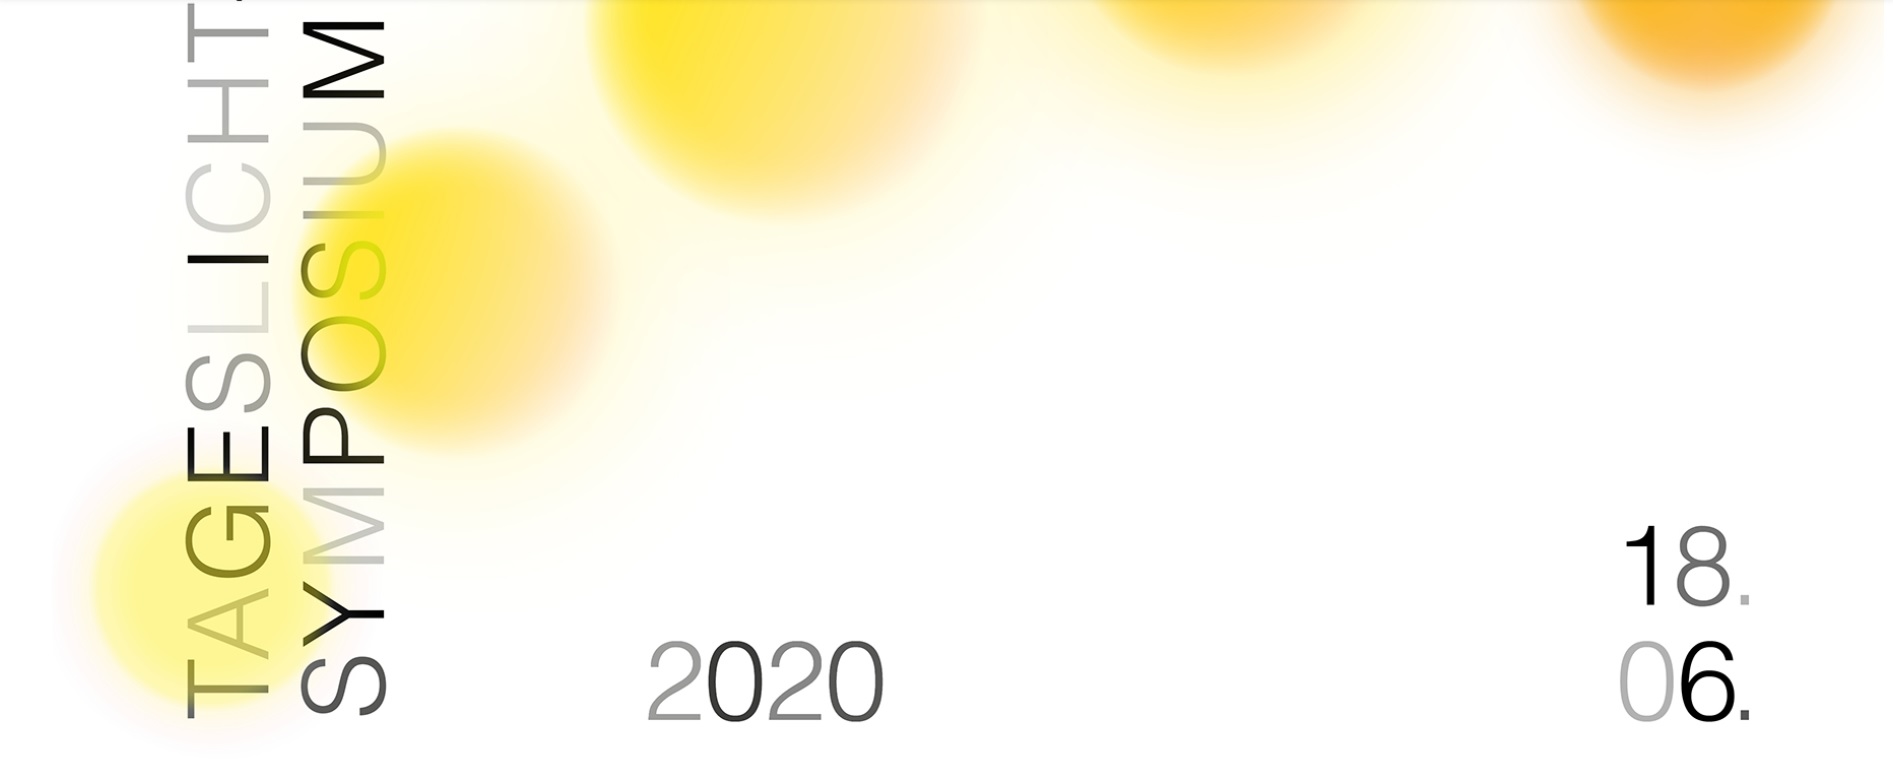 Tageslicht-Symposium 2020: Programm ist online